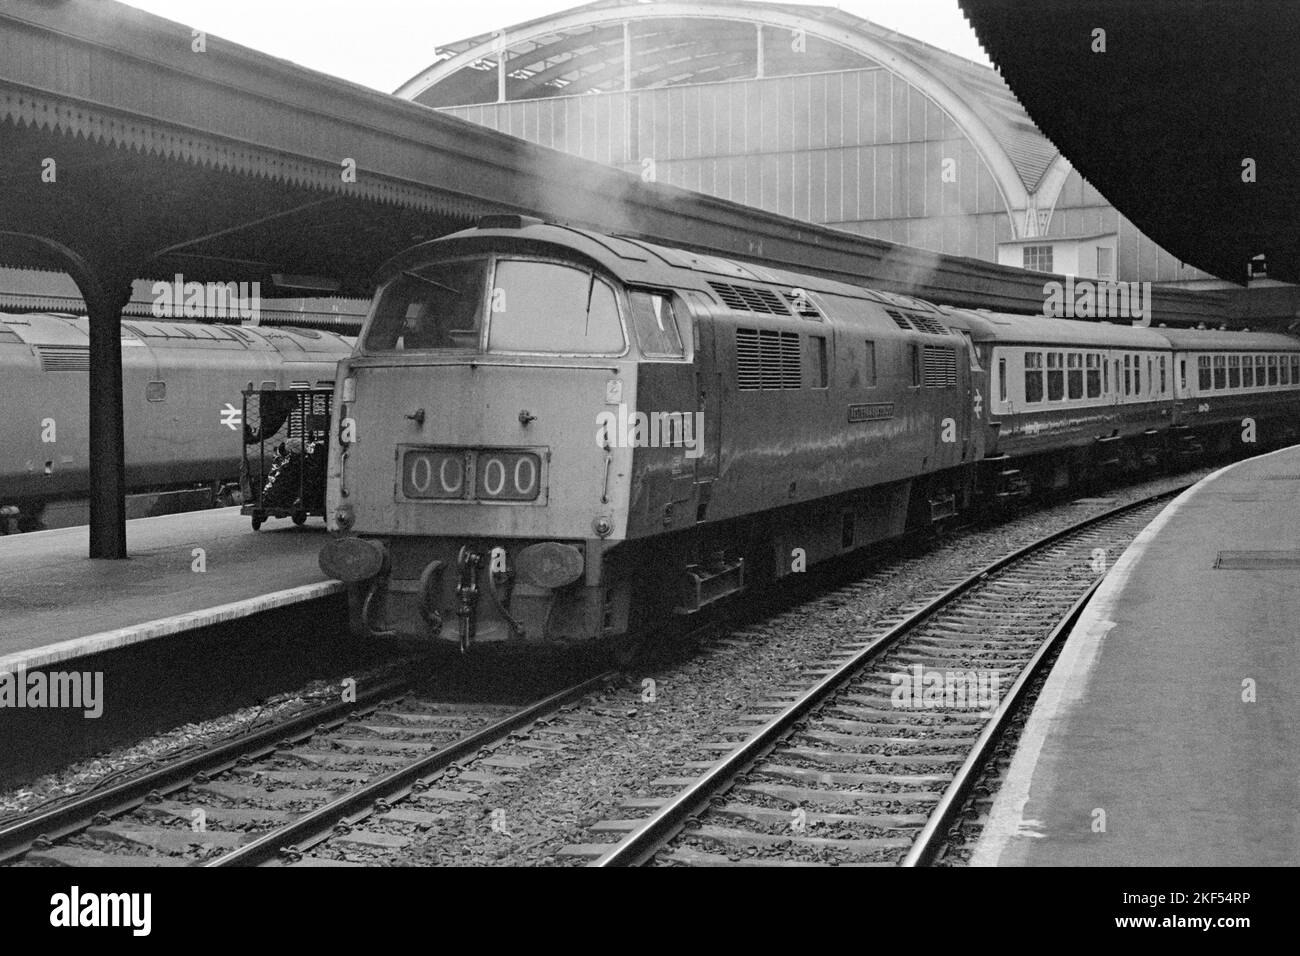 Original britische Eisenbahn Diesel hydraulische Lokomotive Baureihe 52 Nummer d1051 westlichen Botschafter auf Personenverkehr paddington Ende 1970s Anfang 1980s Stockfoto